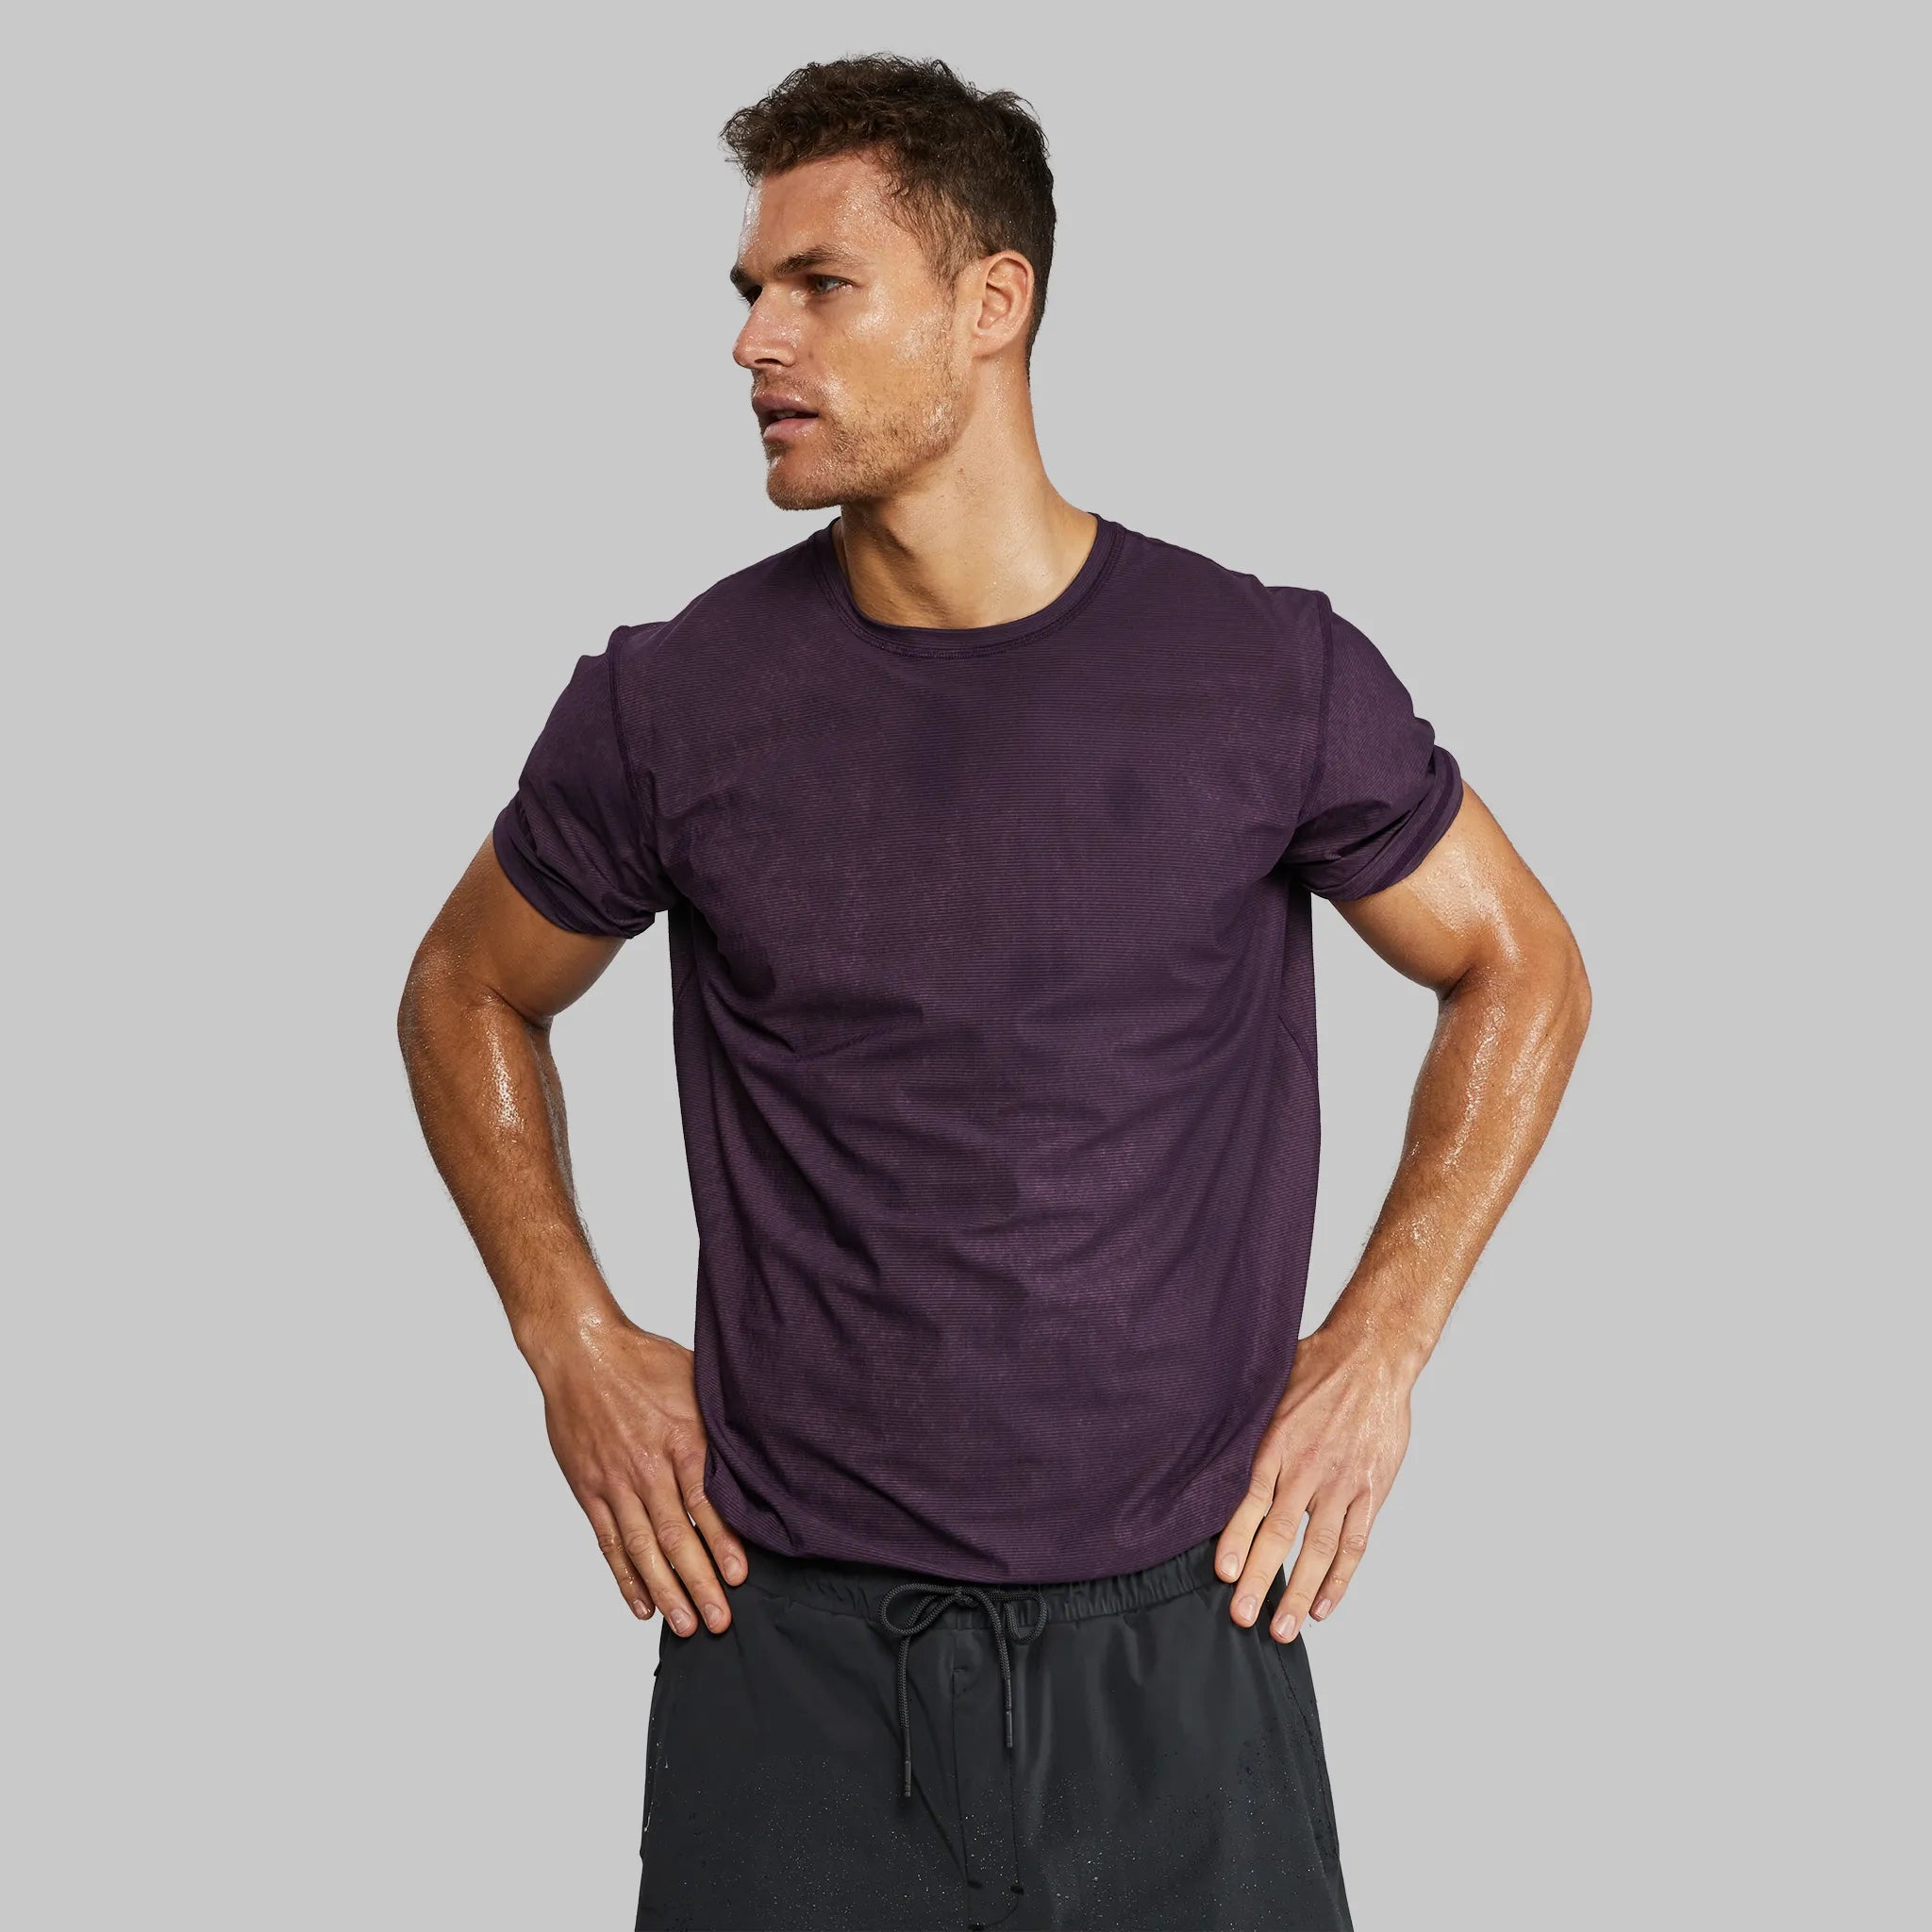 Carbon Fibre T Shirt. Purple edition